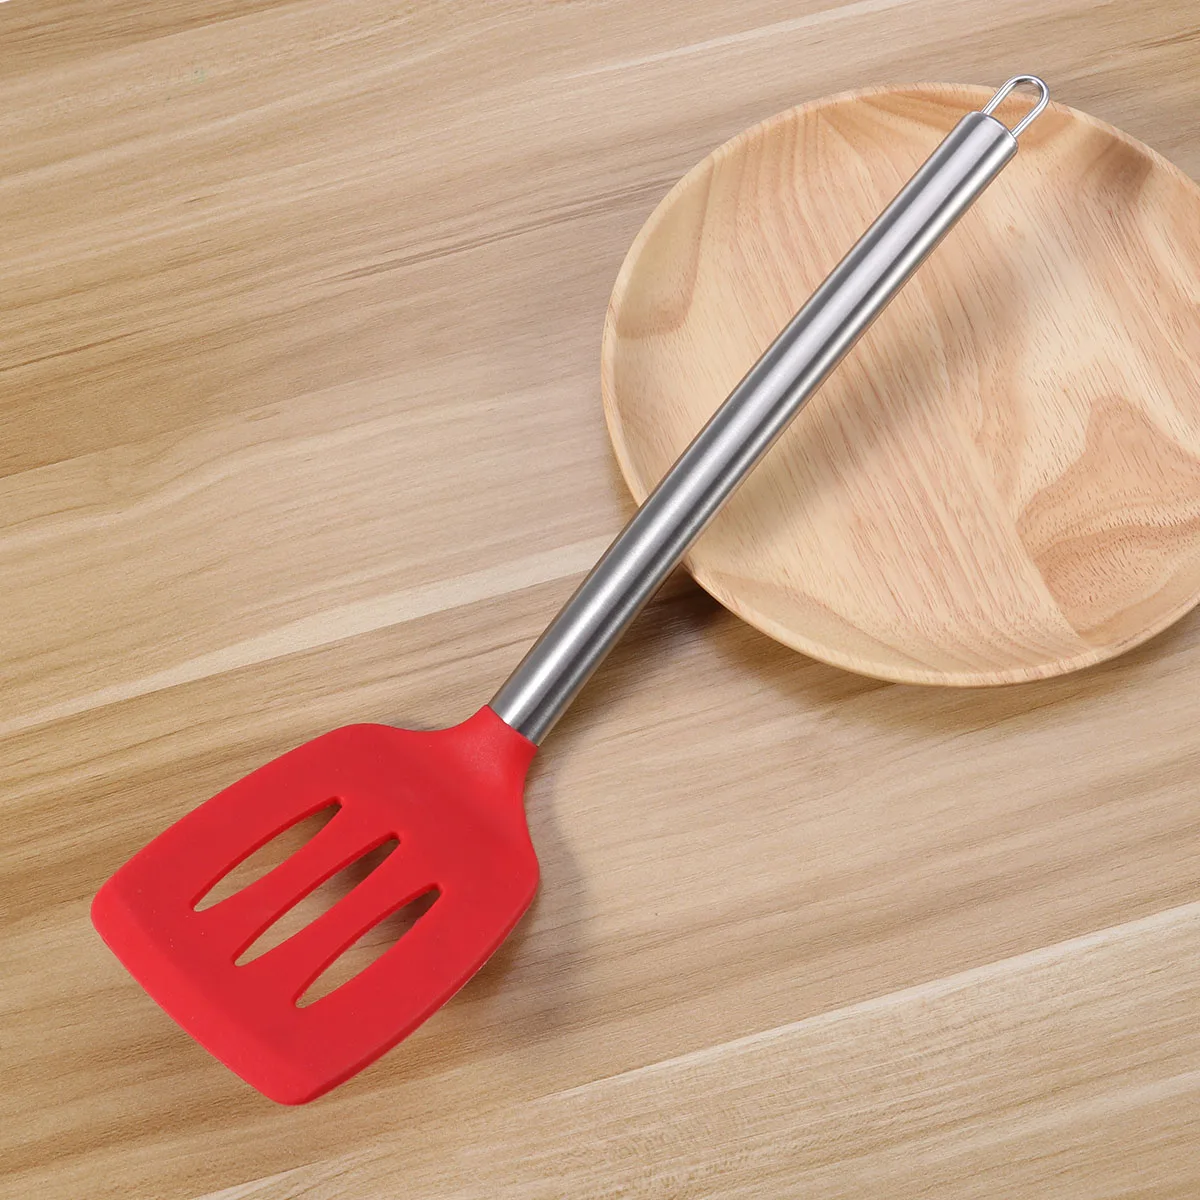 ROSENICE антипригарная термостойкая кухонная лопатка щелевая силиконовая Тернер с нержавеющей стальная длинная ручка(красная